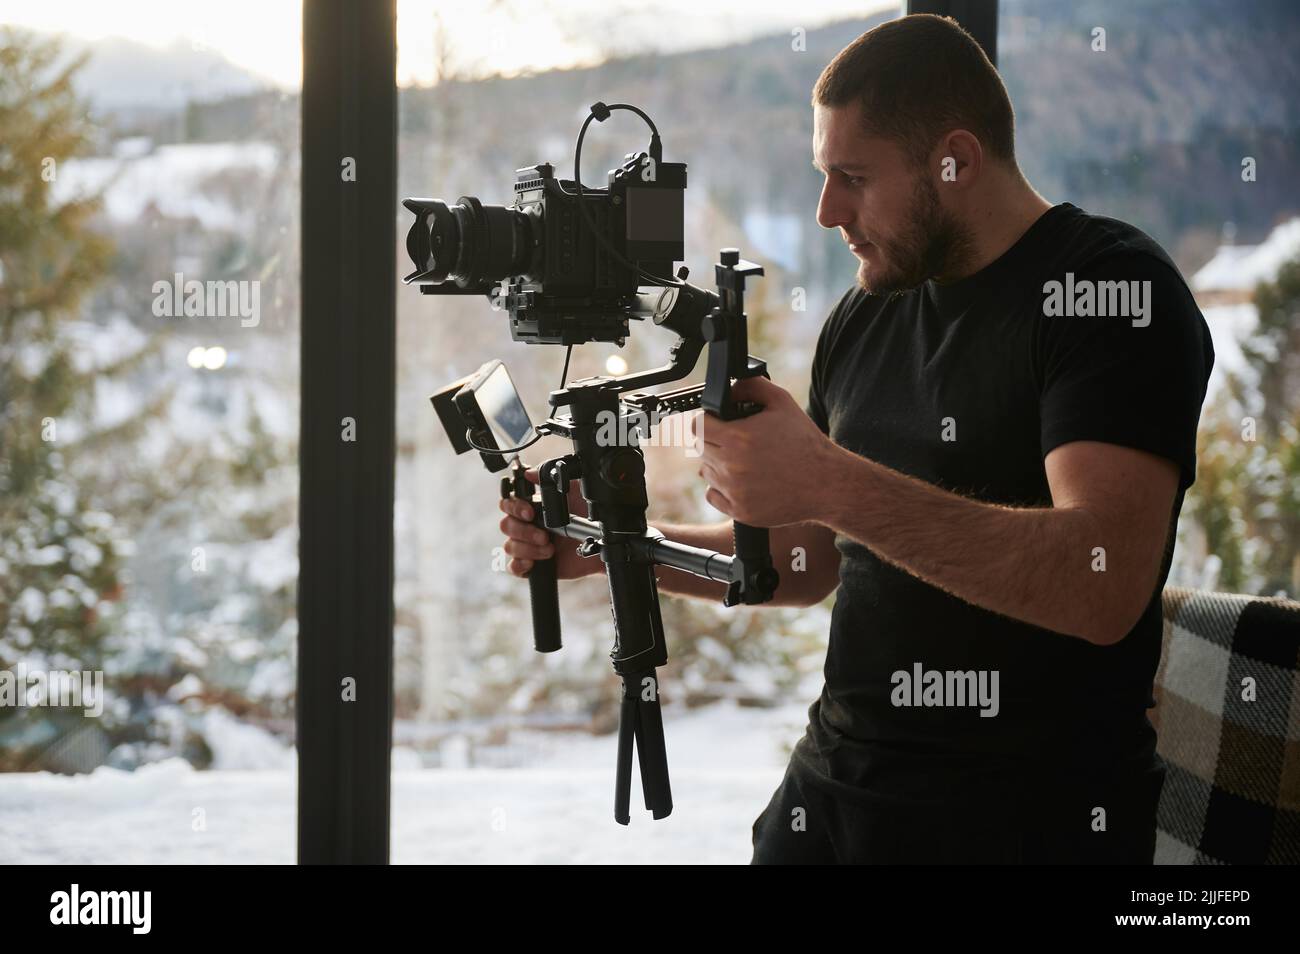 Uomo videografo che realizza riprese, utilizzando una fotocamera montata su un'attrezzatura stabilizzatore gimbal. Finestre panoramiche con paesaggio invernale sullo sfondo. Foto Stock